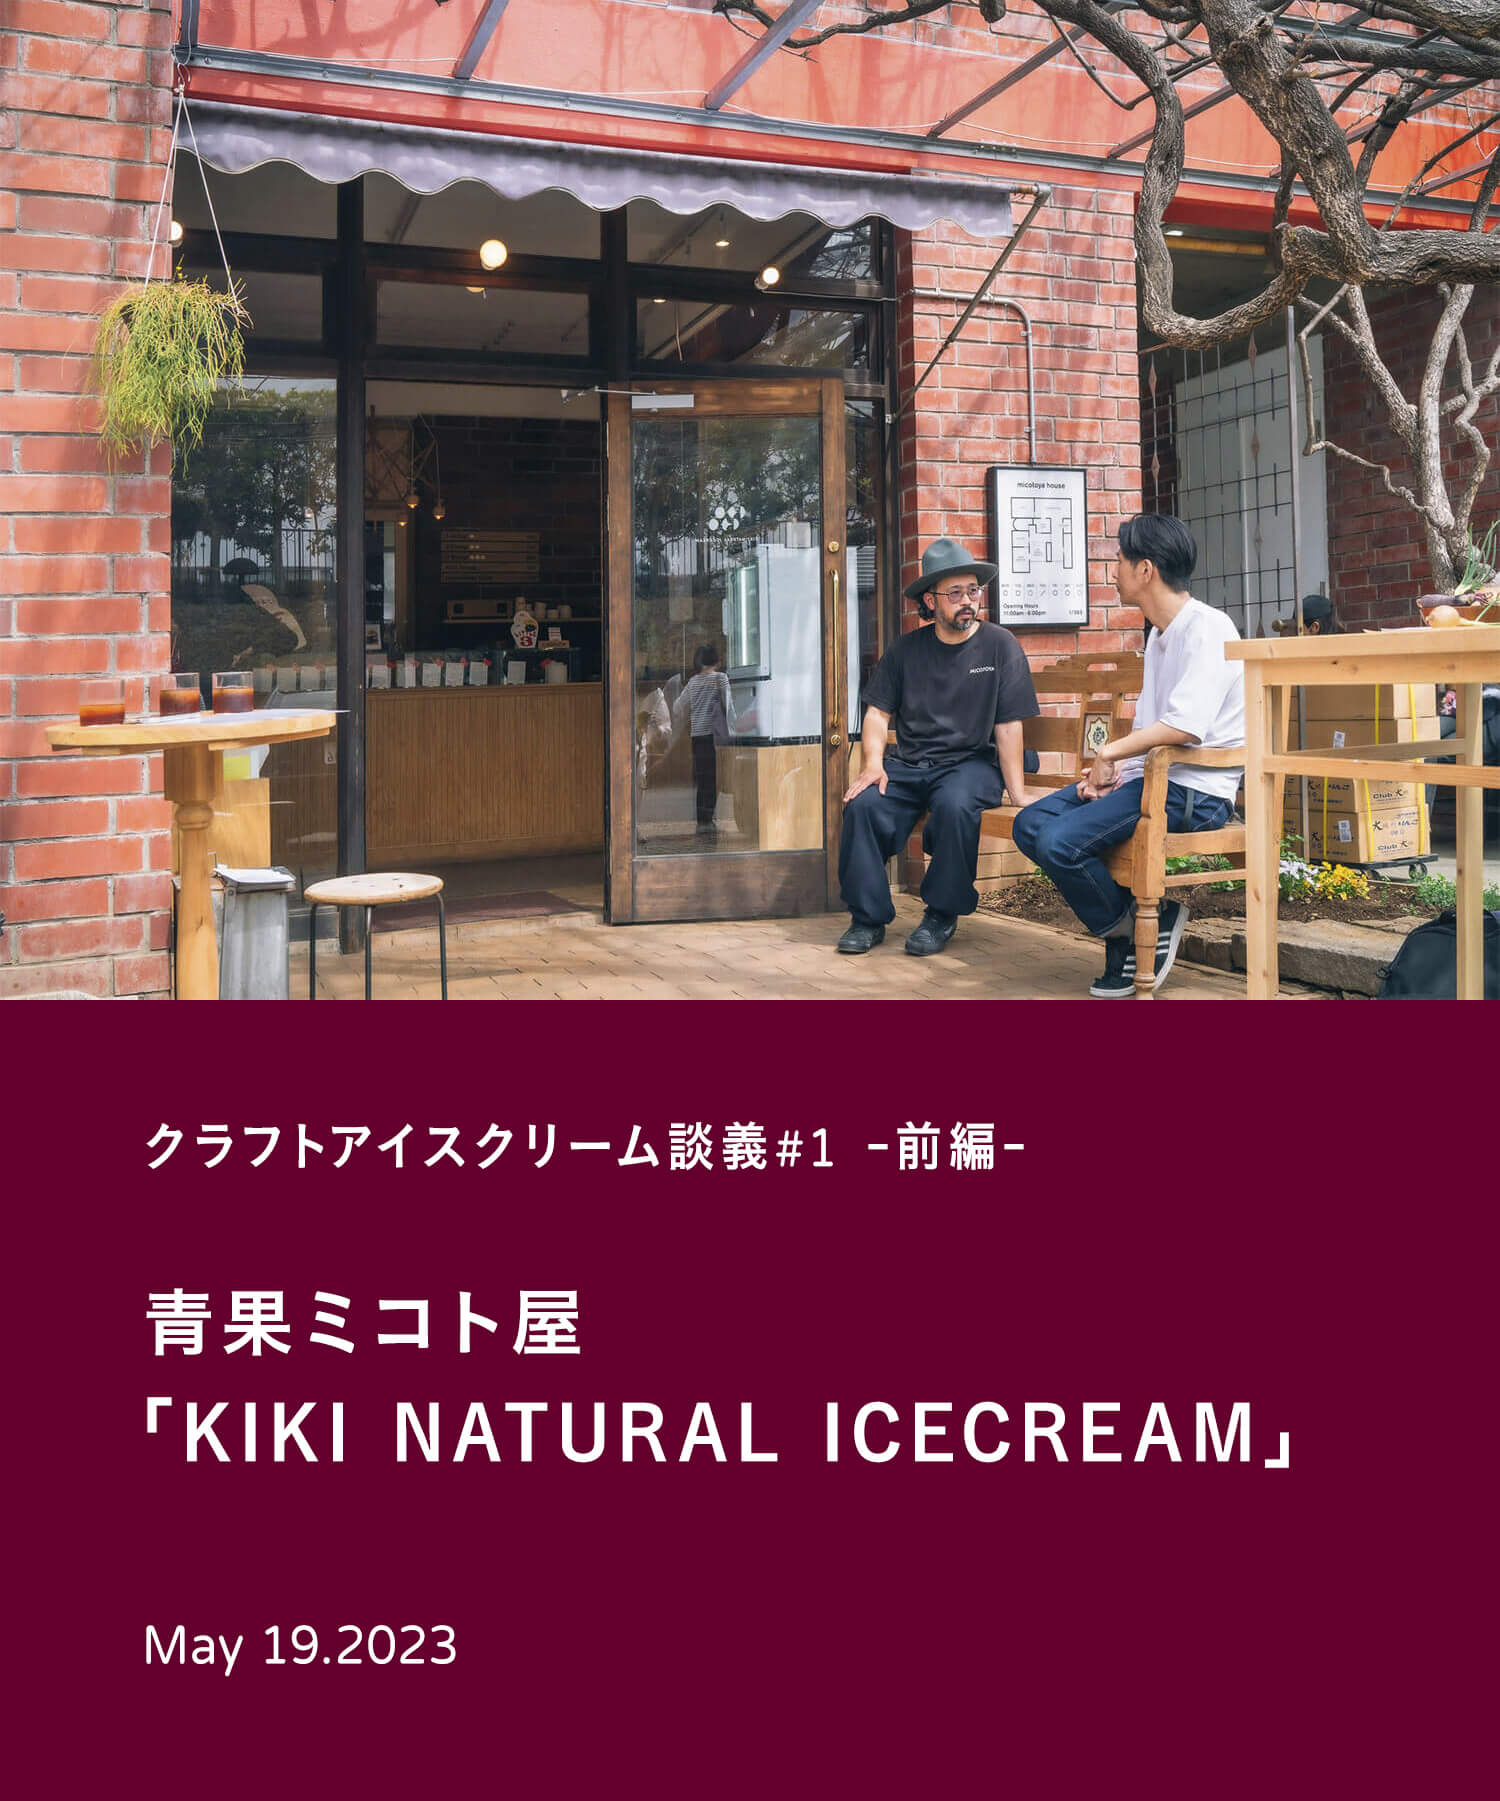 クラフトアイスクリーム談義#1- 前編 -　青果ミコト屋「KIKI NATURAL ICECREAM」